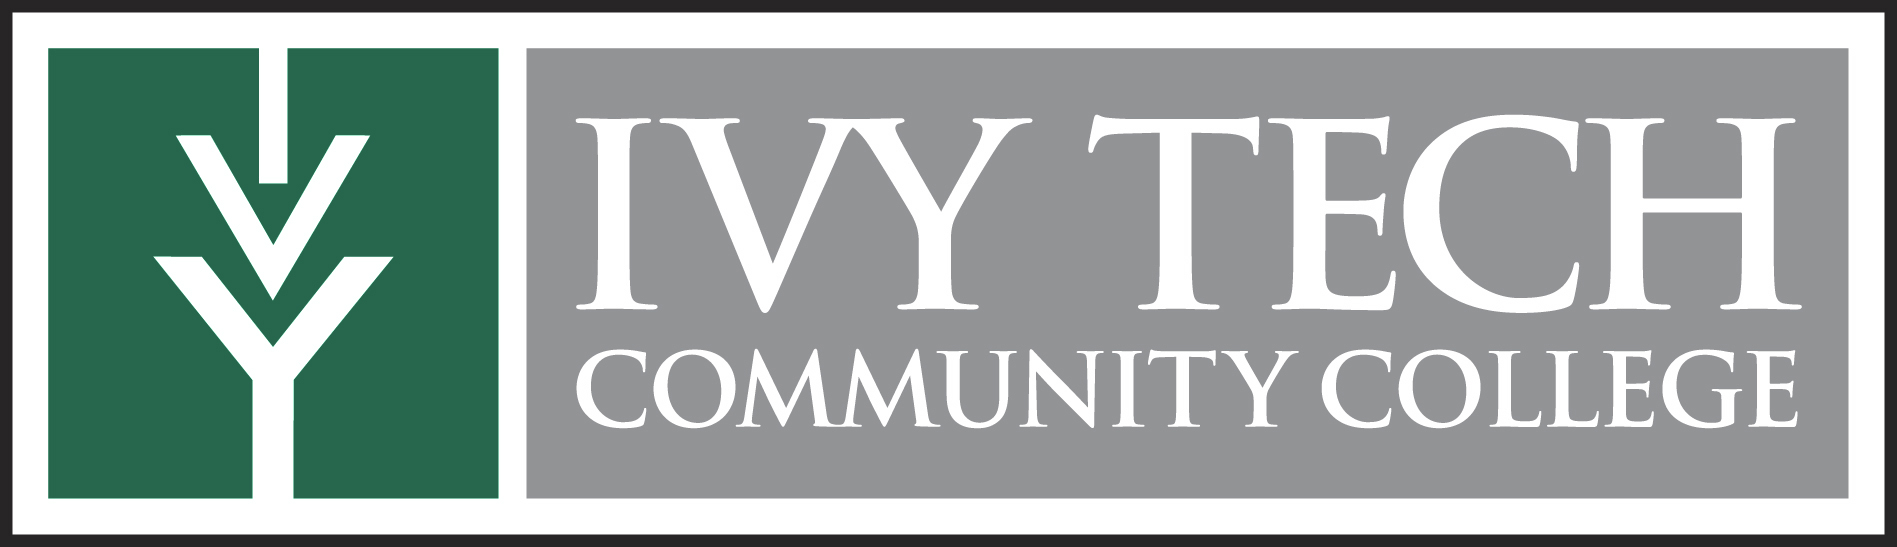 Logotipo de Ivy Tech Community College